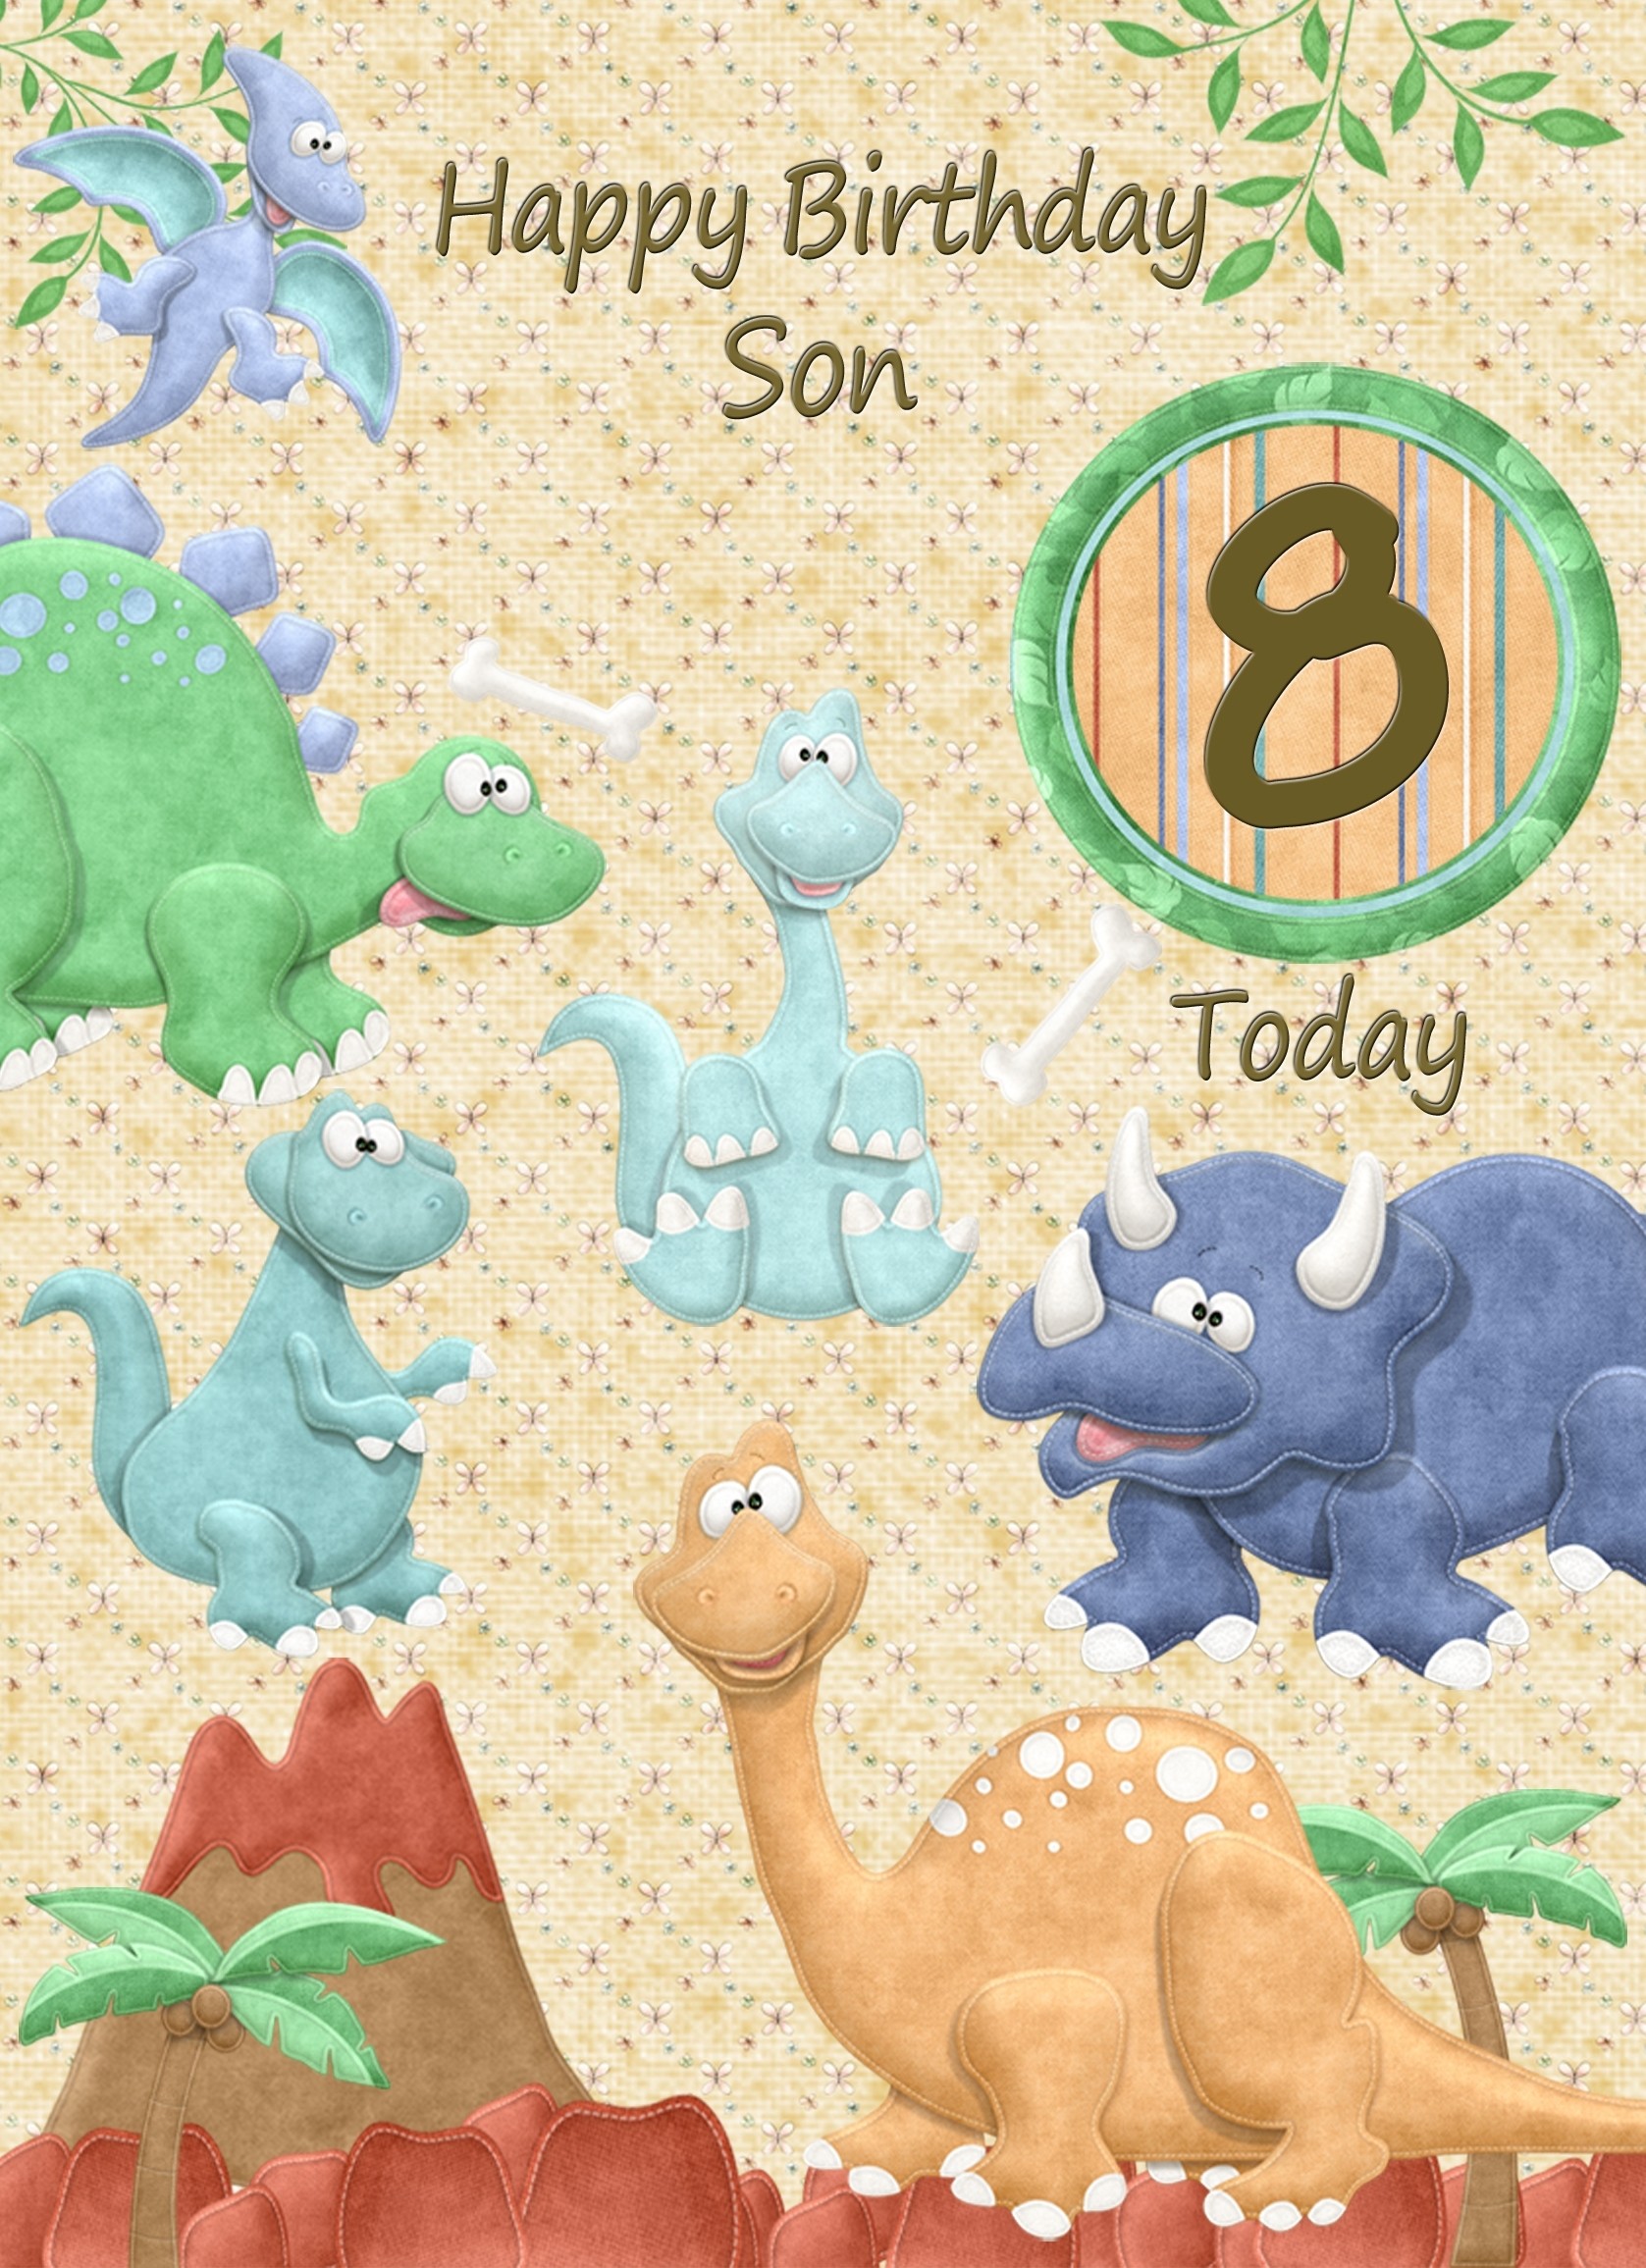 Kids 8th Birthday Dinosaur Cartoon Card for Son